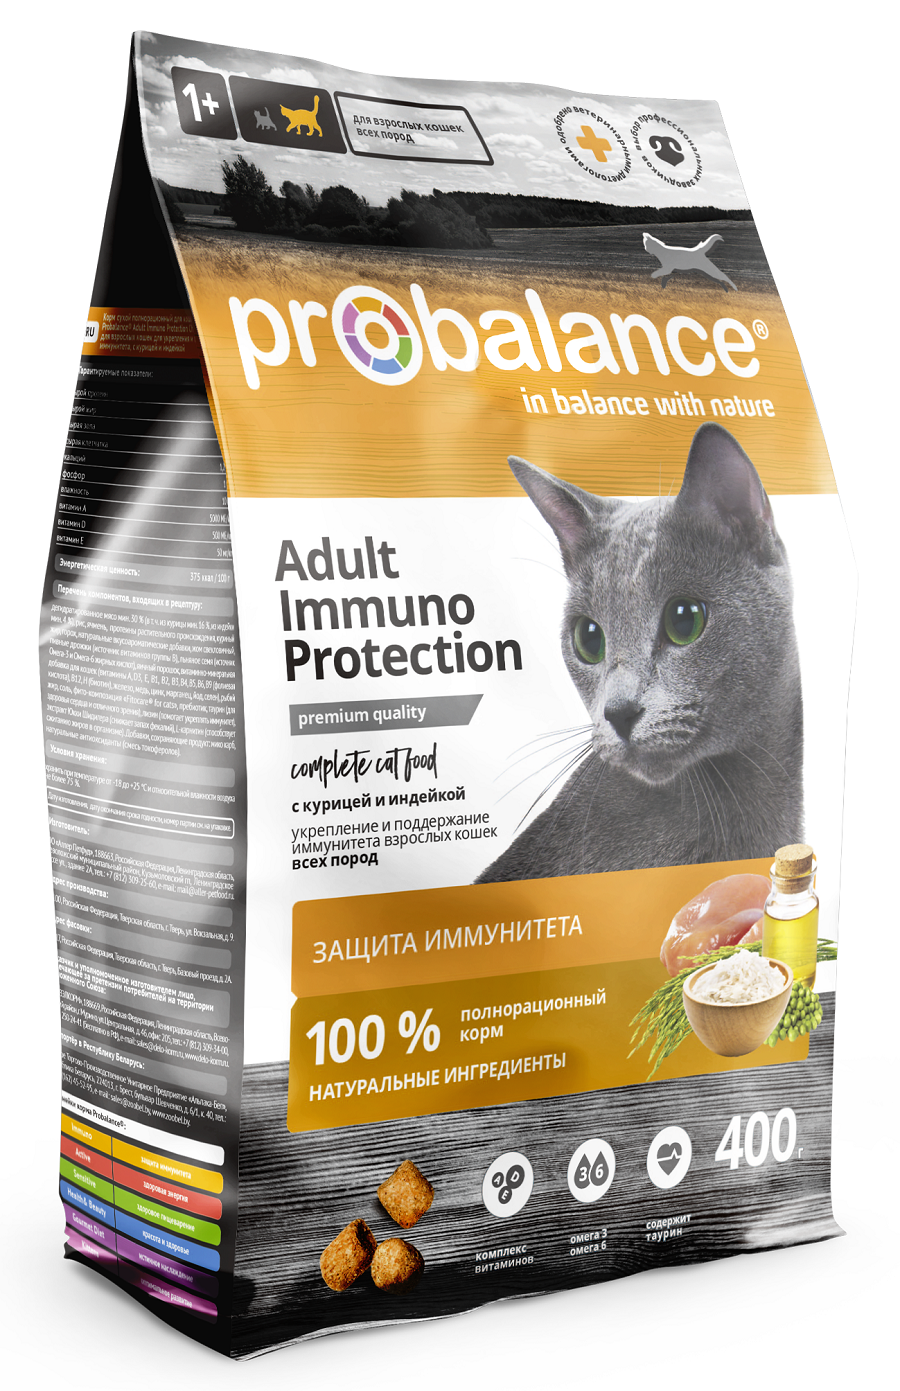 Сухой корм для кошек Probalance Immuno Protection, с курицей и индейкой, 400 г